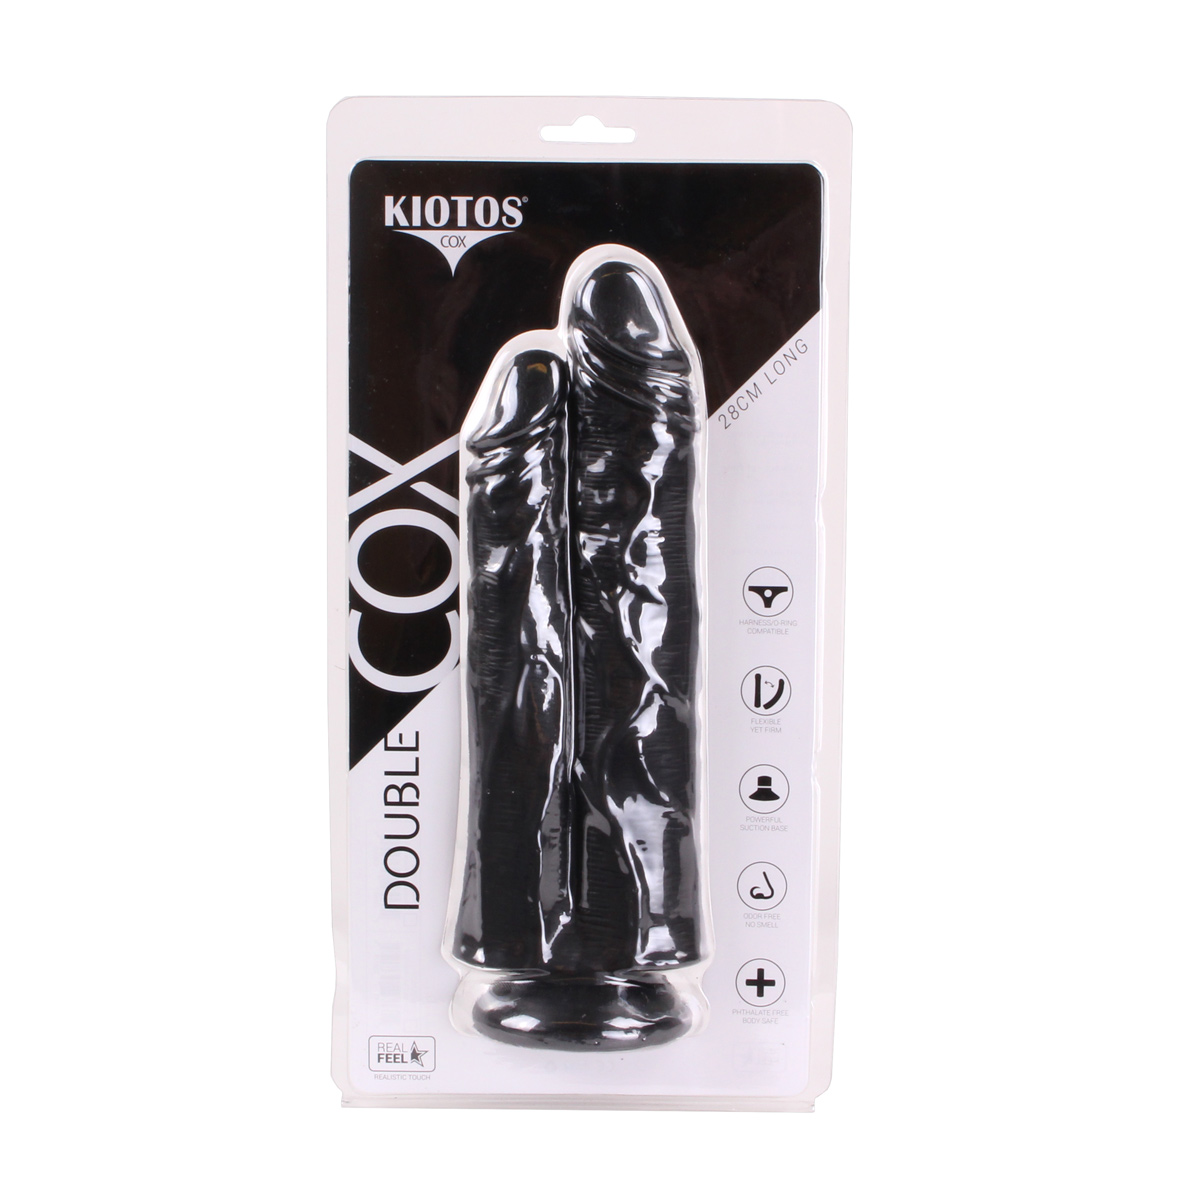 Kiotos-COX-Black-029-OPR-3070058-4